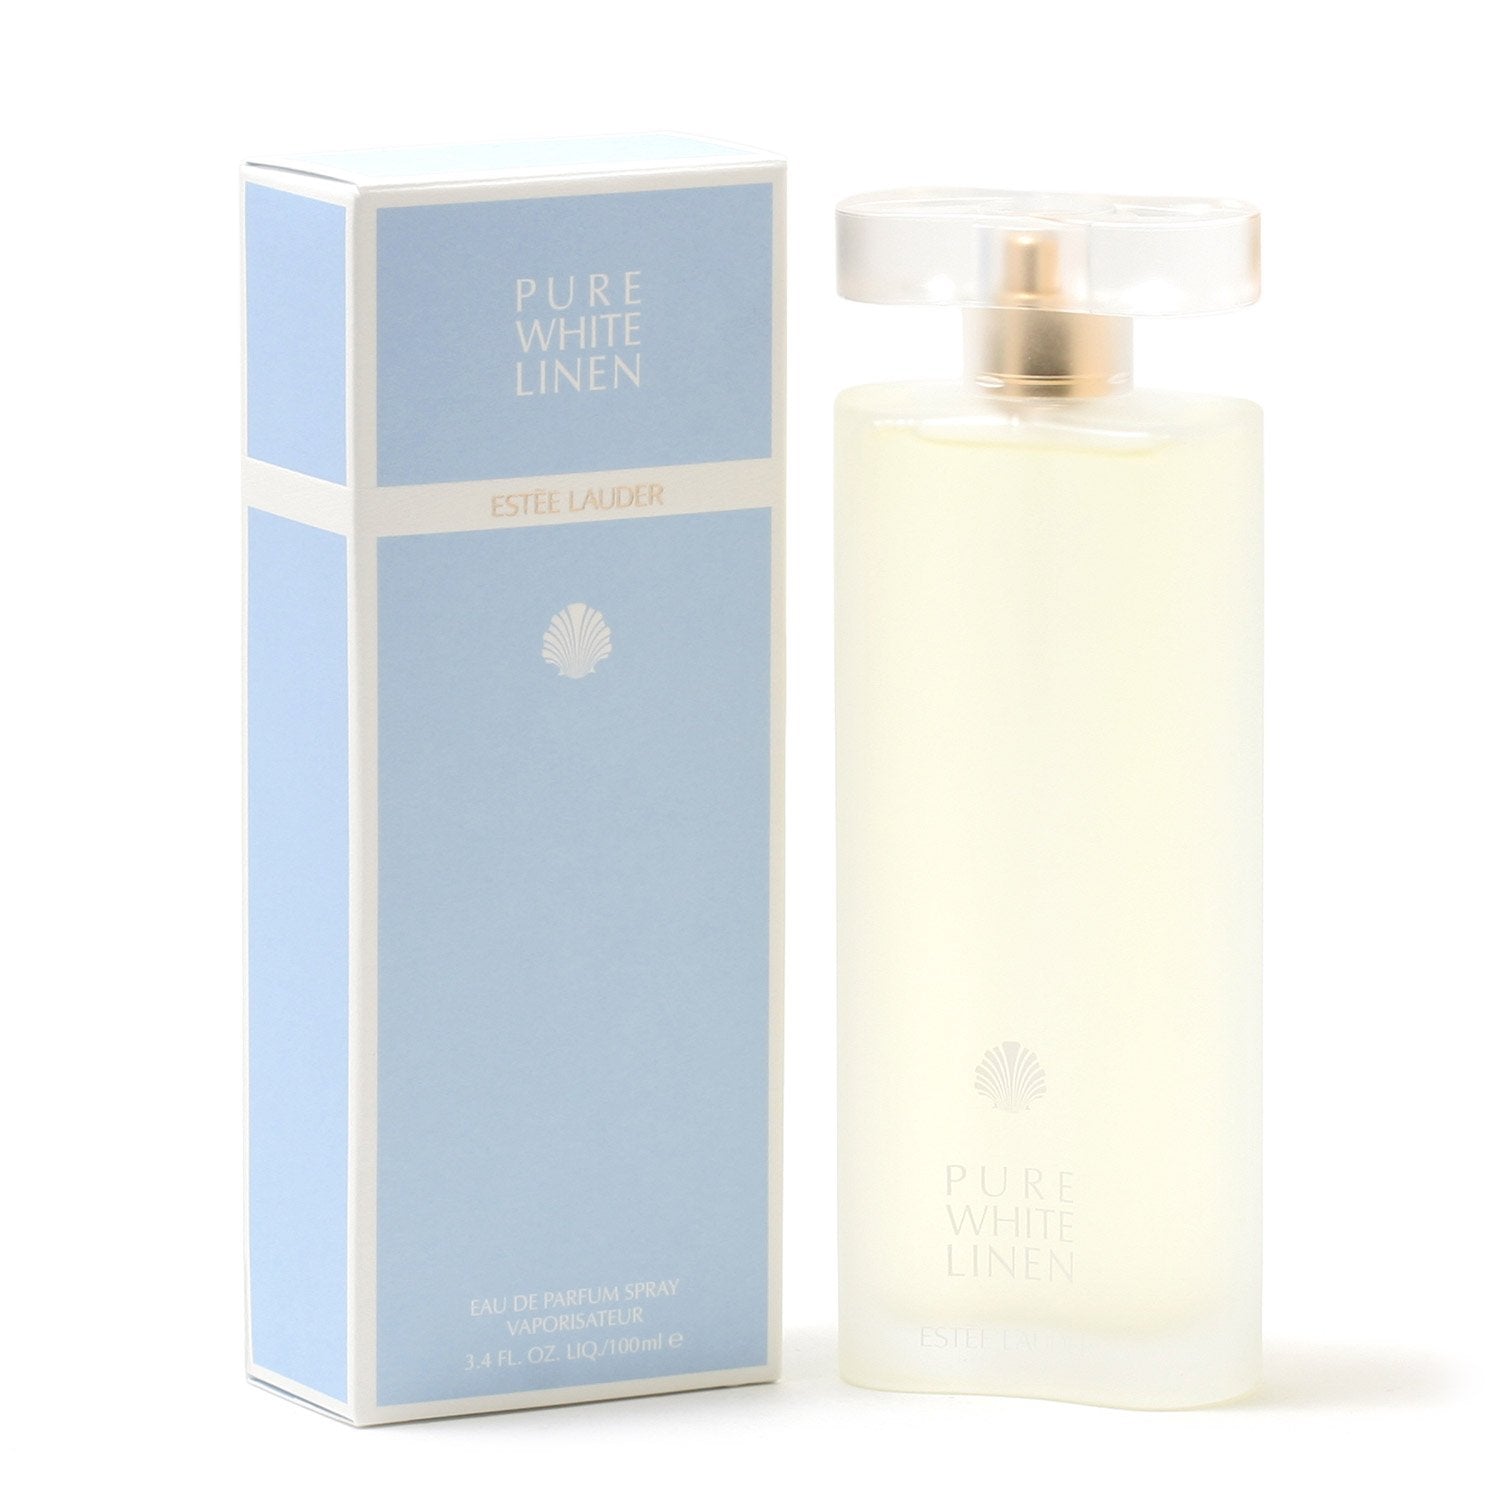 Perfume - PURE WHITE LINEN FOR WOMEN BY ESTEE LAUDER - EAU DE PARFUM SPRAY, 3.4 OZ